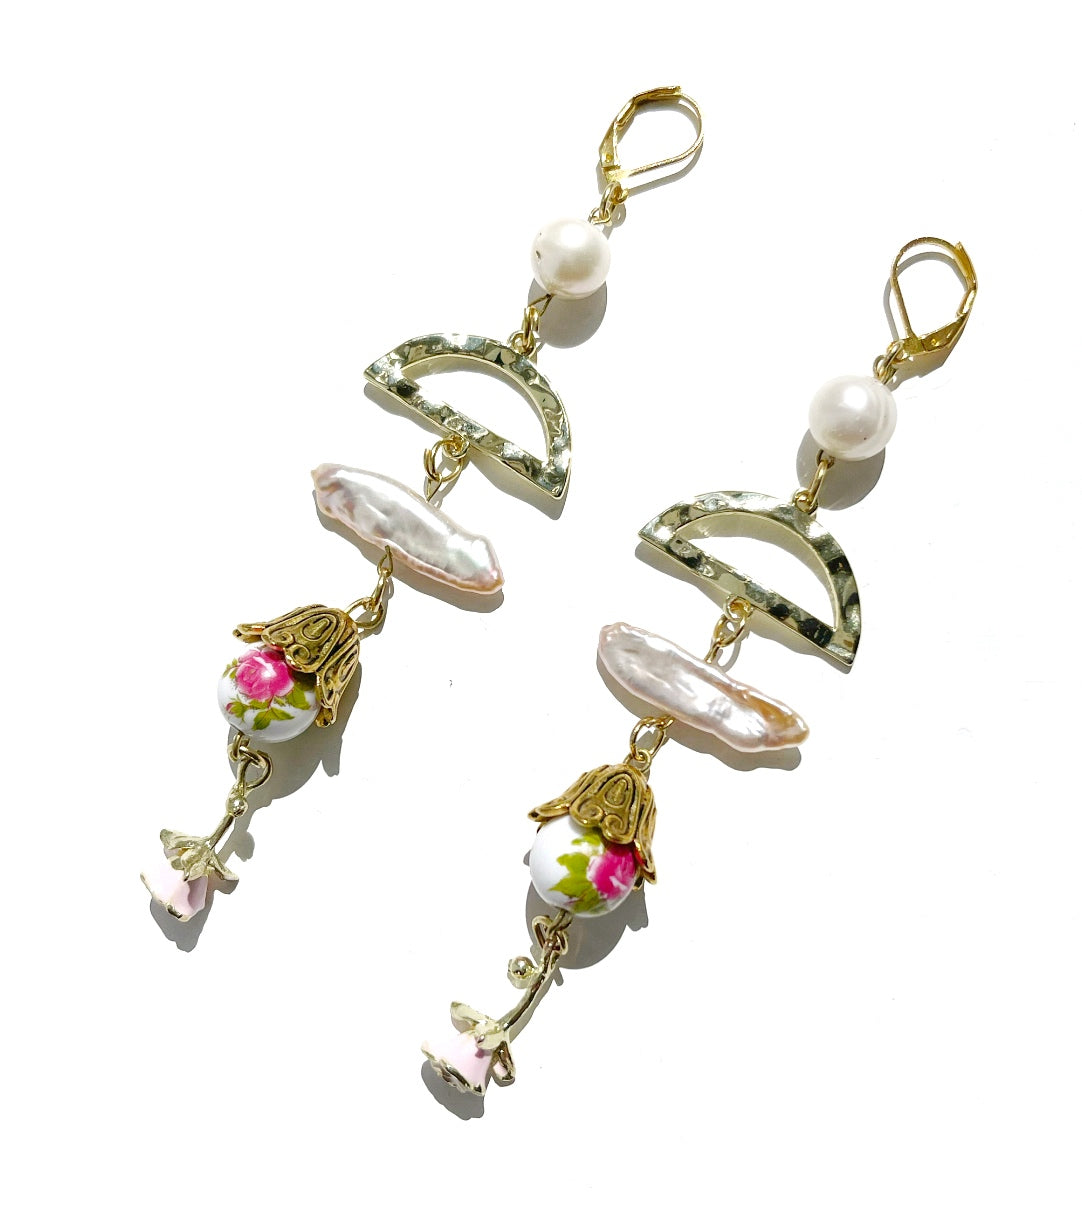 Pearl drop earrings with rose flower charm, white freshwater pearl dangle earrings, statement earrings, summer earrings